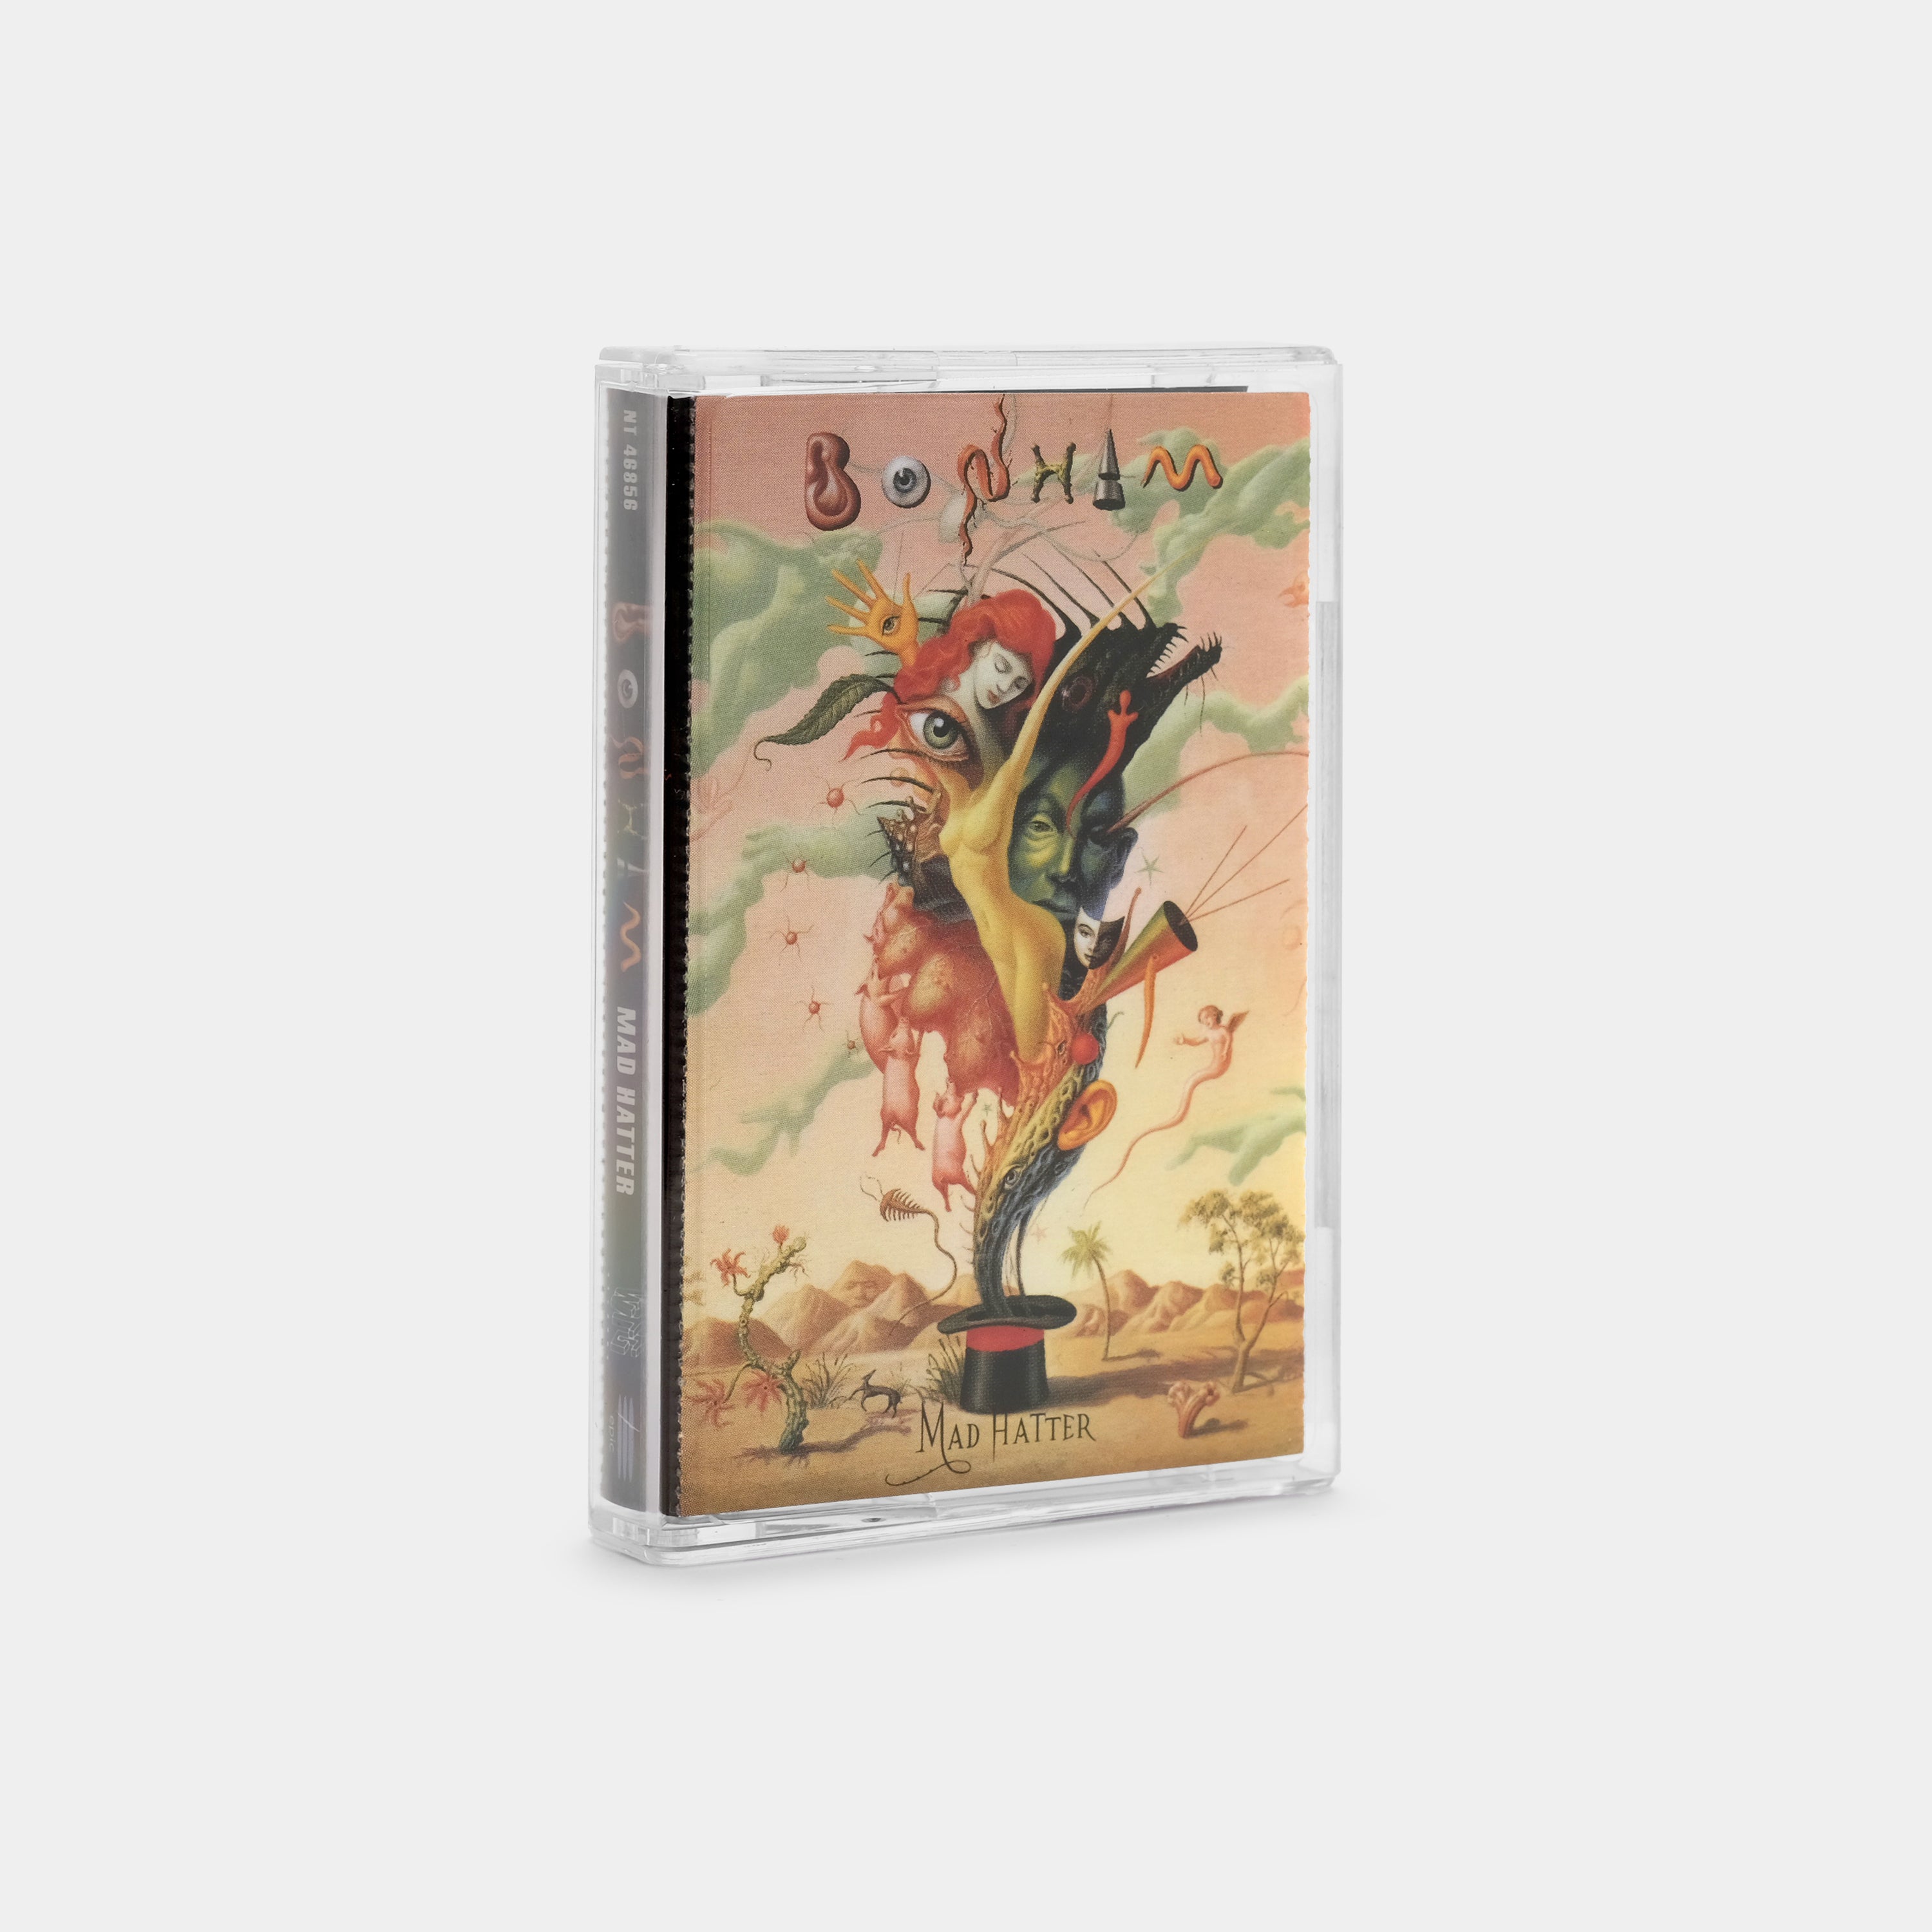 Bonham - Mad Hatter Cassette Tape